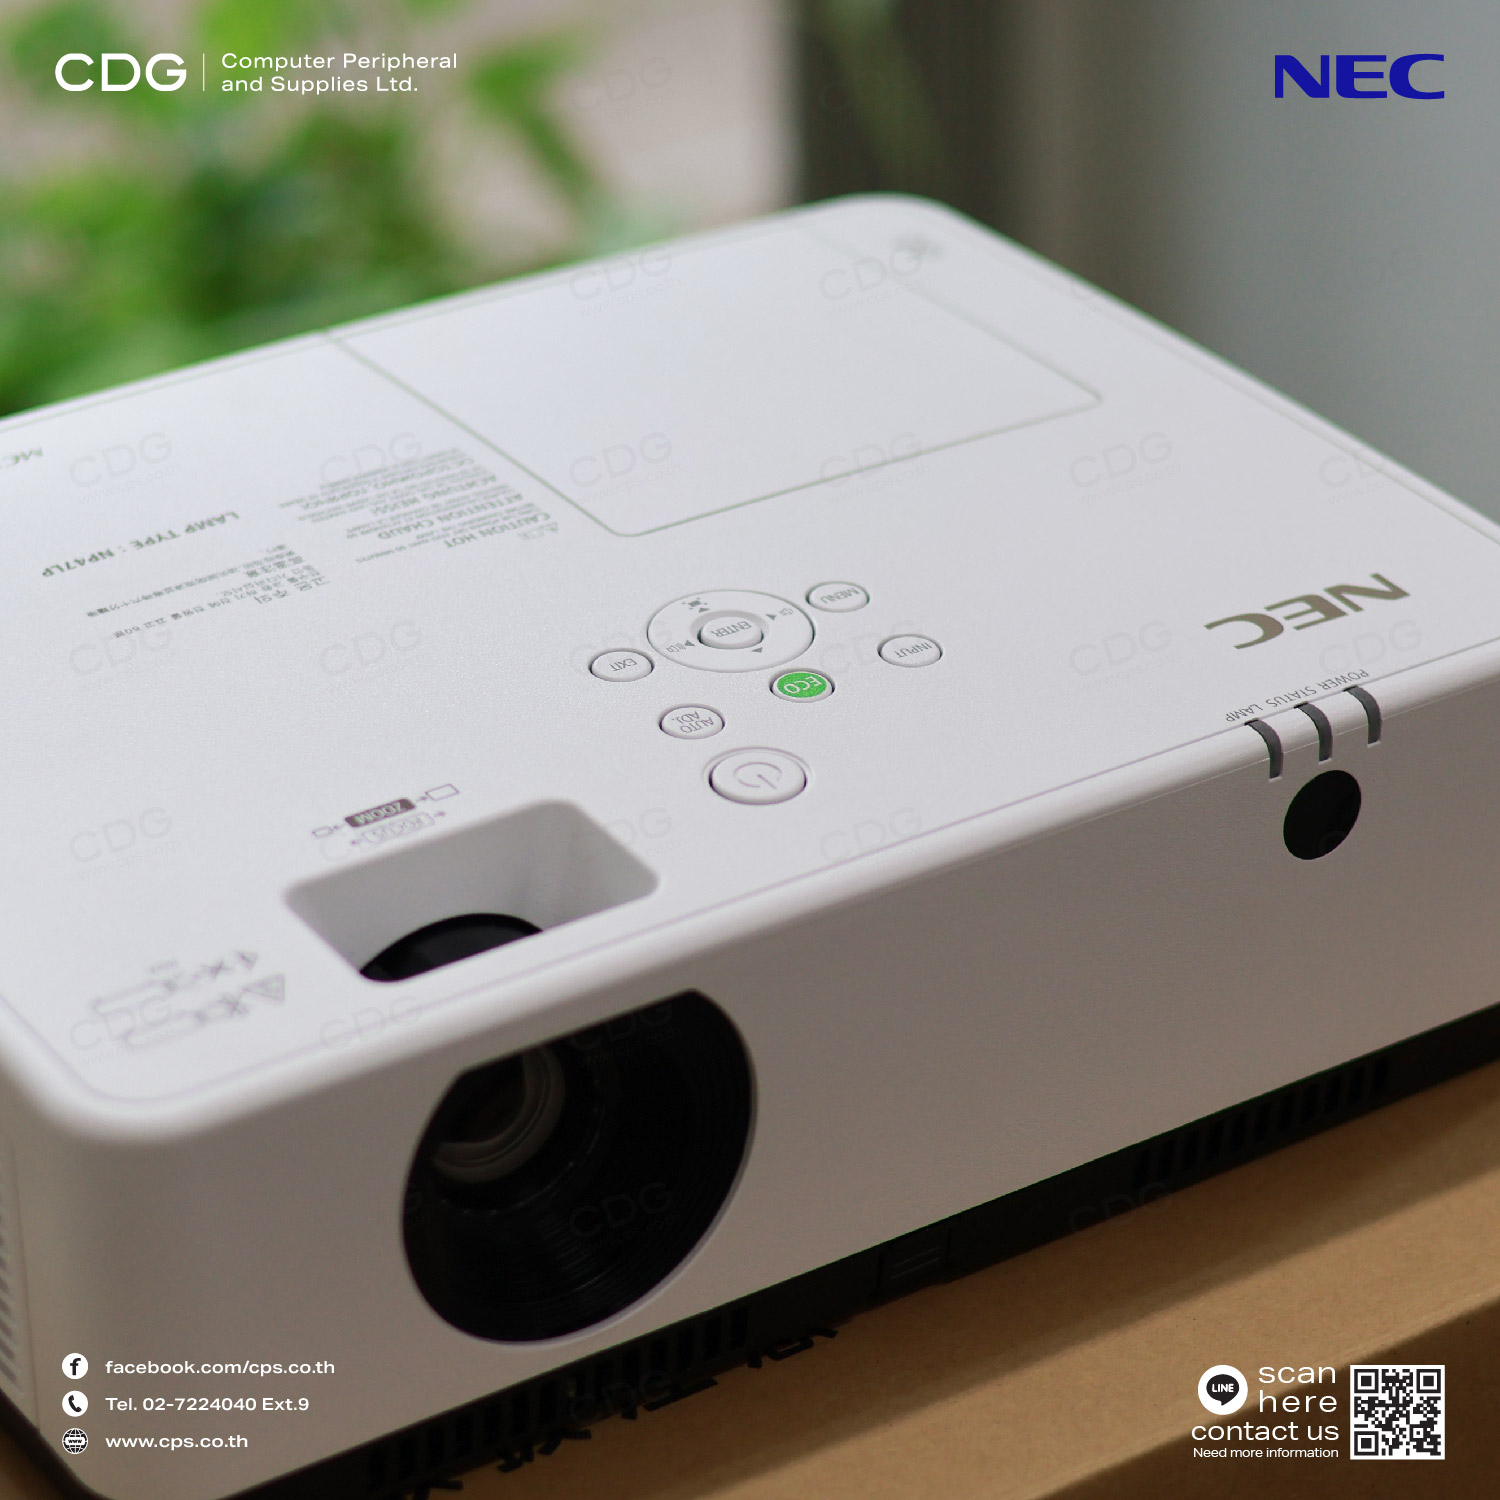 Portable Projector NEC MC393WG